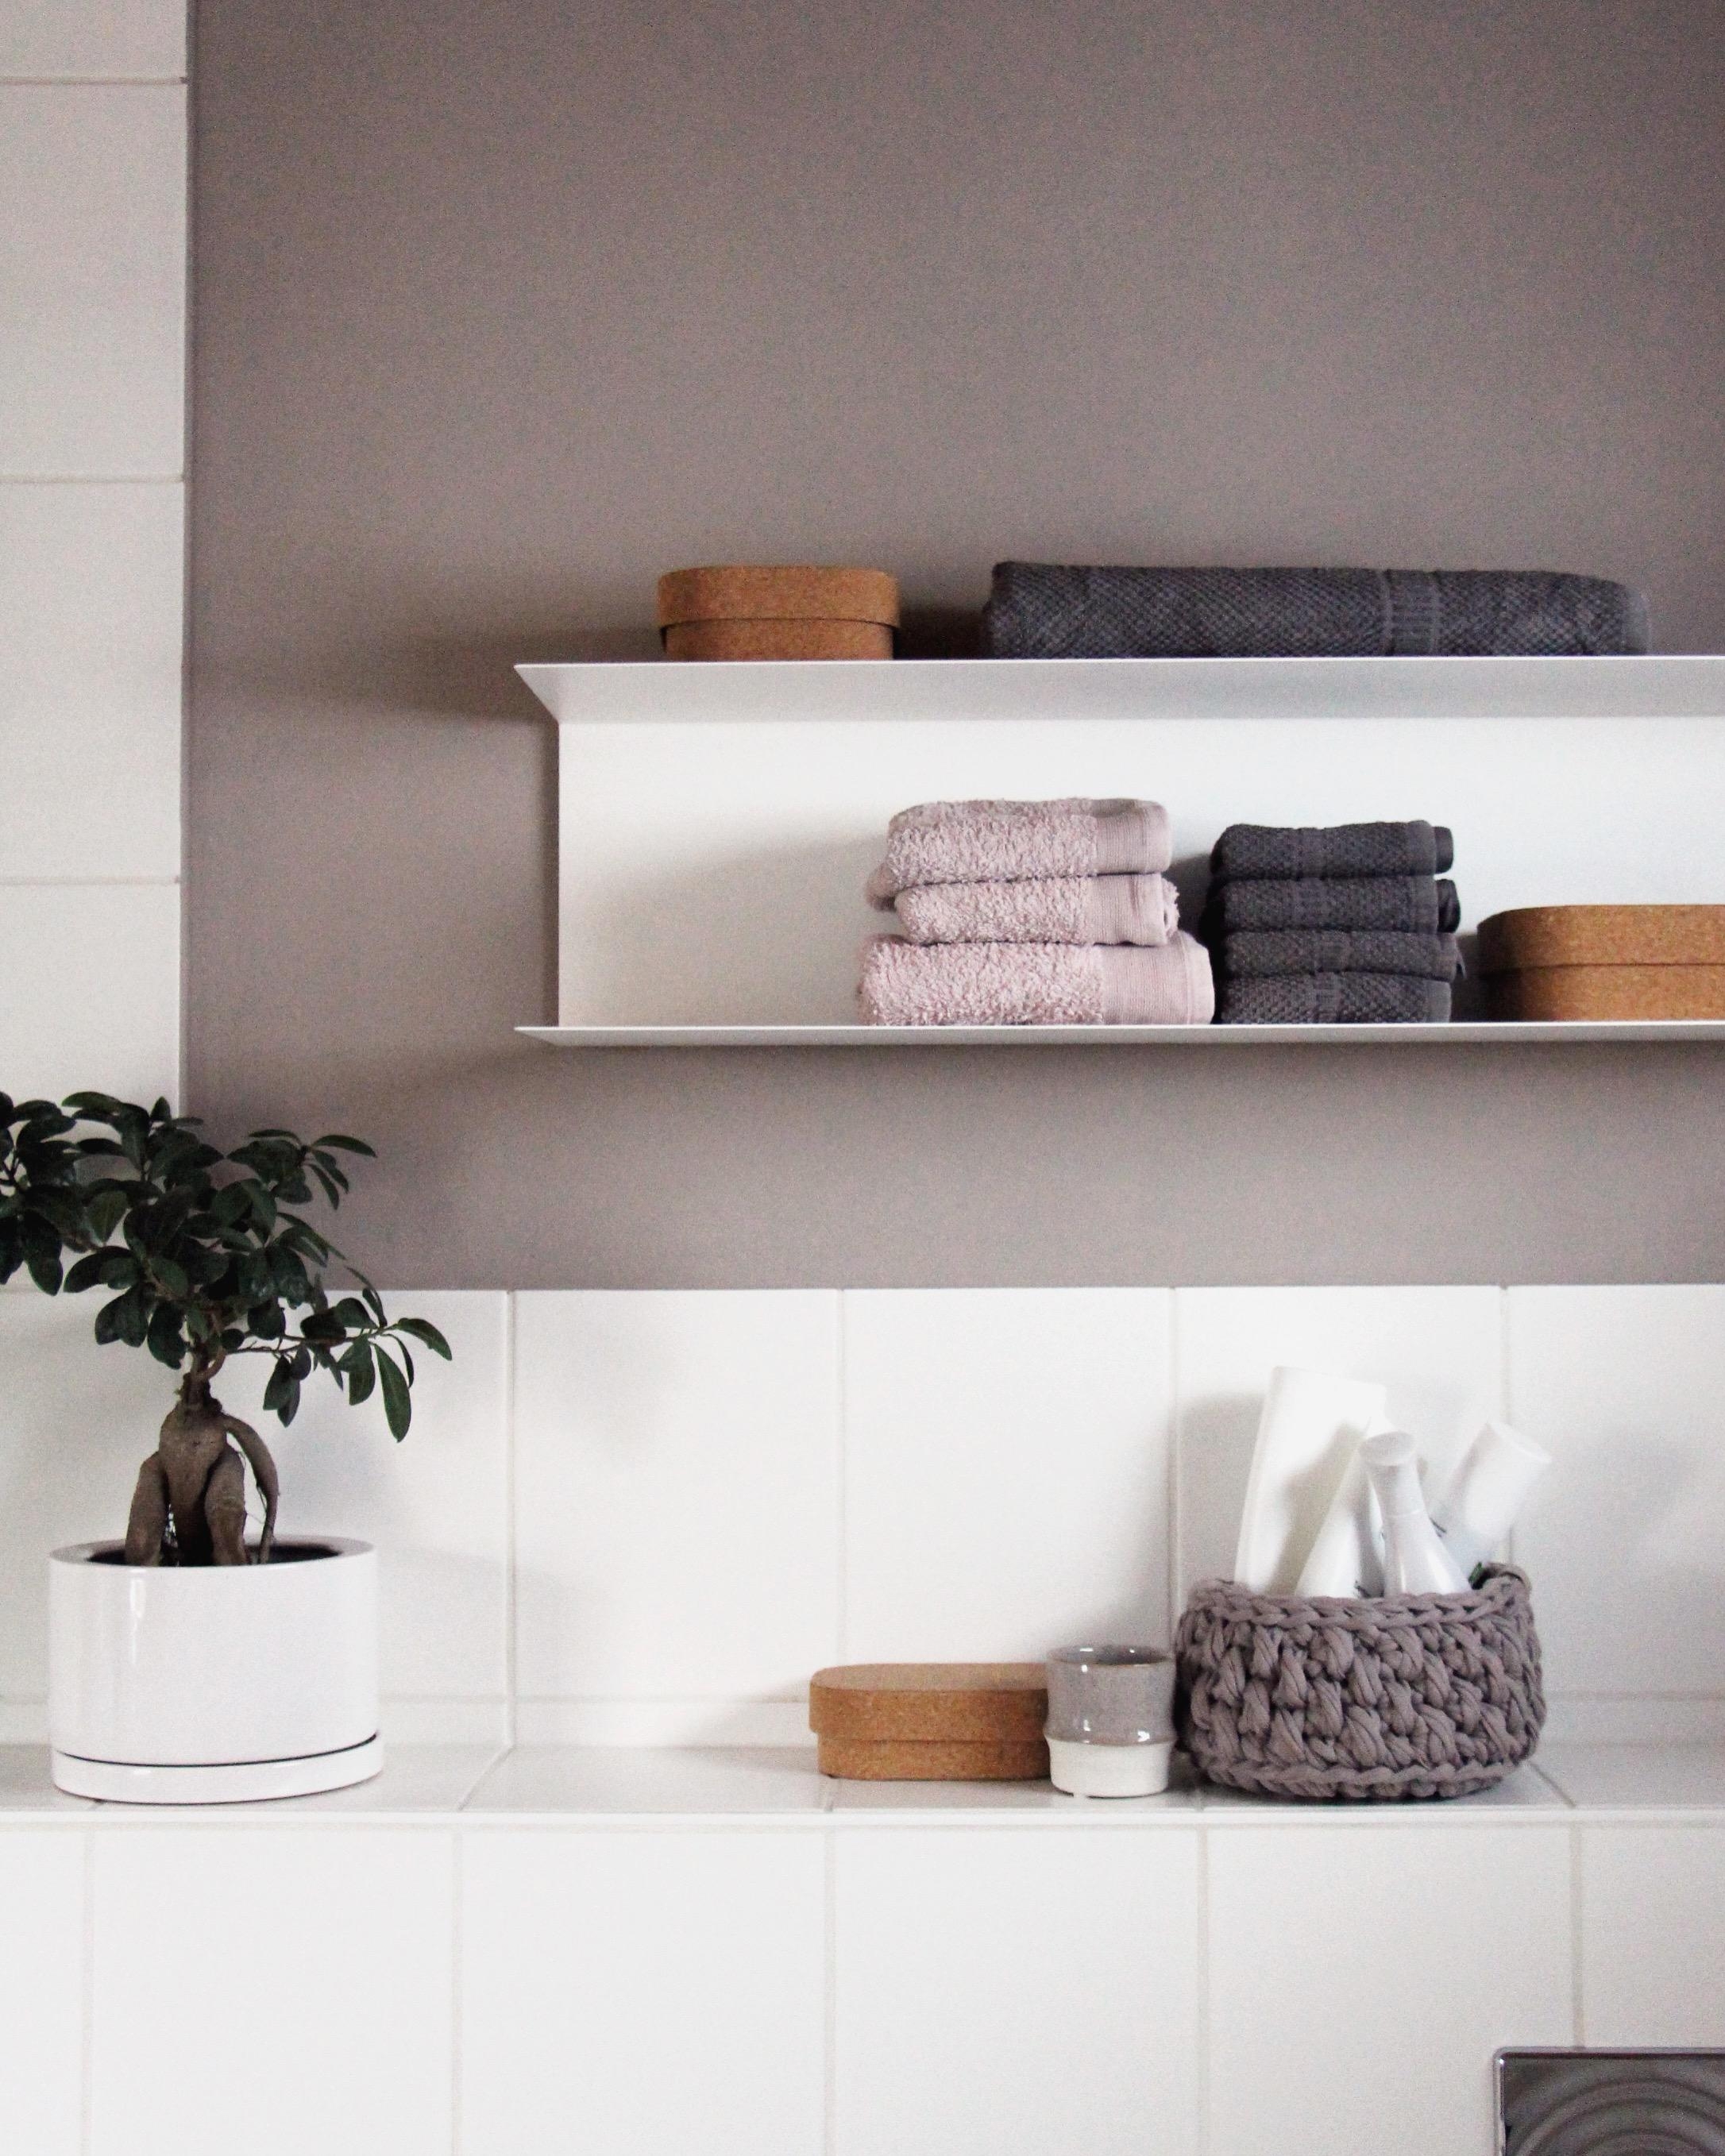 #makeover im #badezimmer
Was #farbe und ein neues #regal doch bewirken... #ilike #bad #shelf #shelfie #kork #minimalism